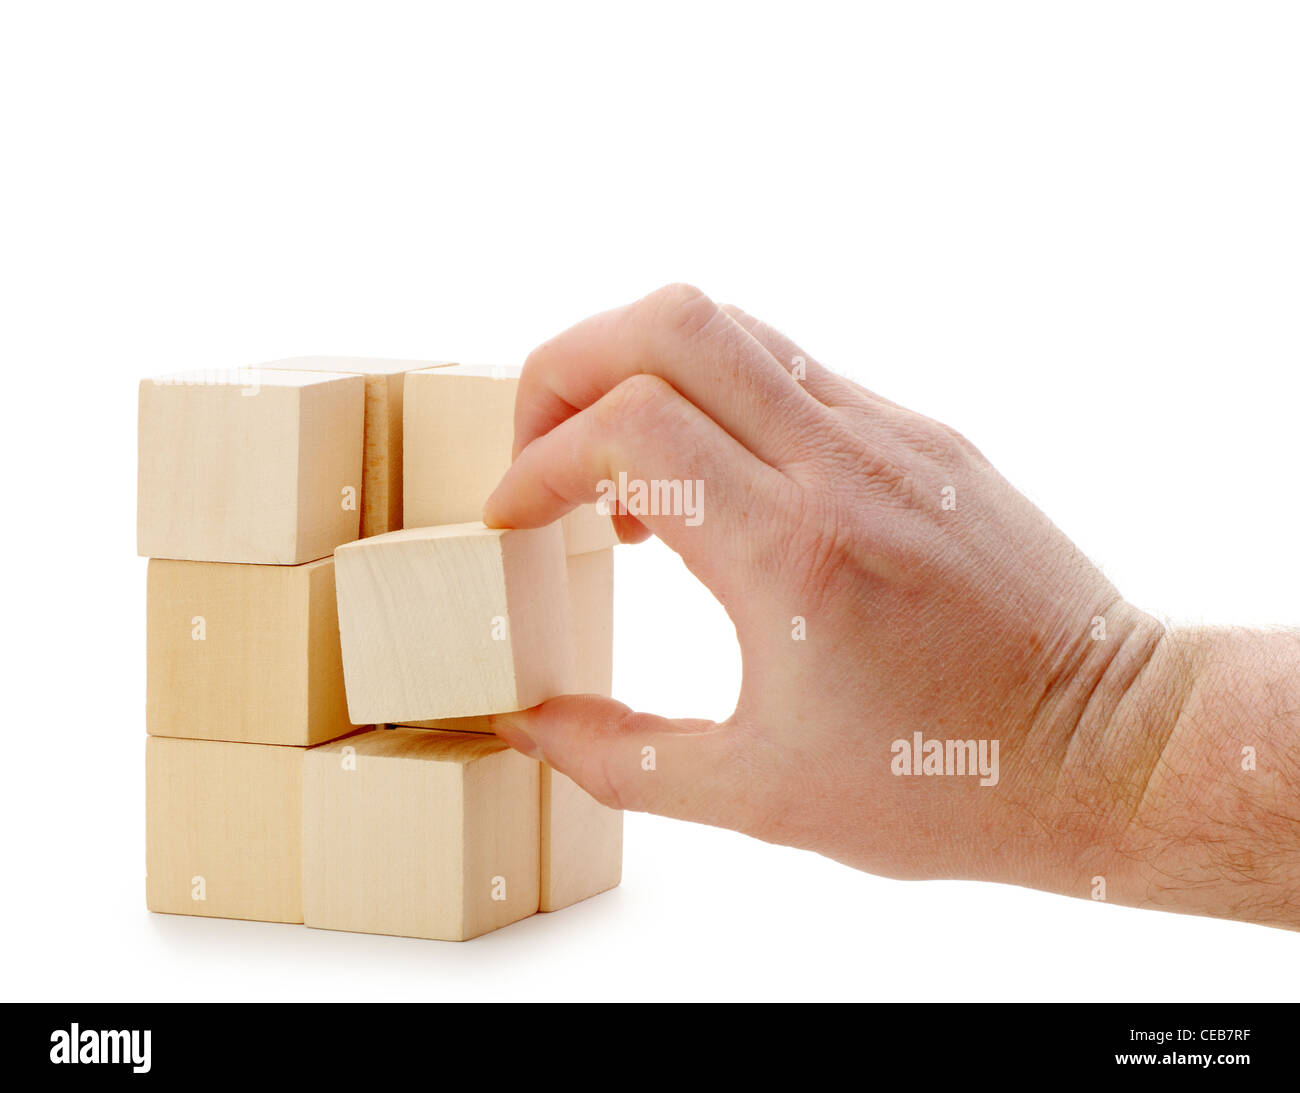 La mano se establece un cubo de madera. Se encuentra aislado en un fondo blanco. Foto de stock